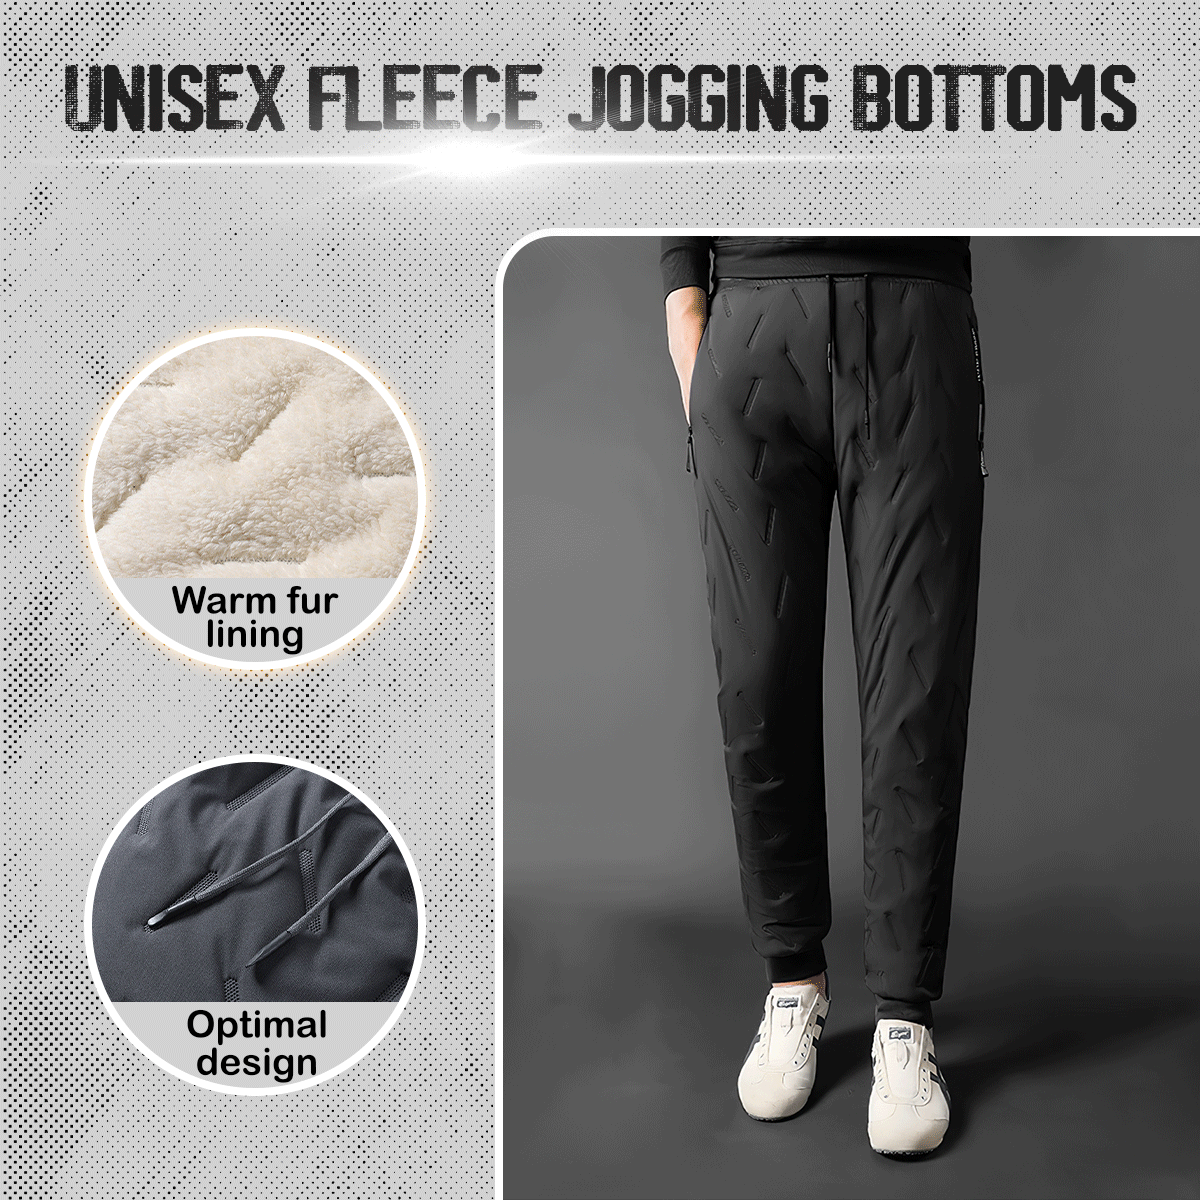 Unisex Fleece Jogging Bottoms